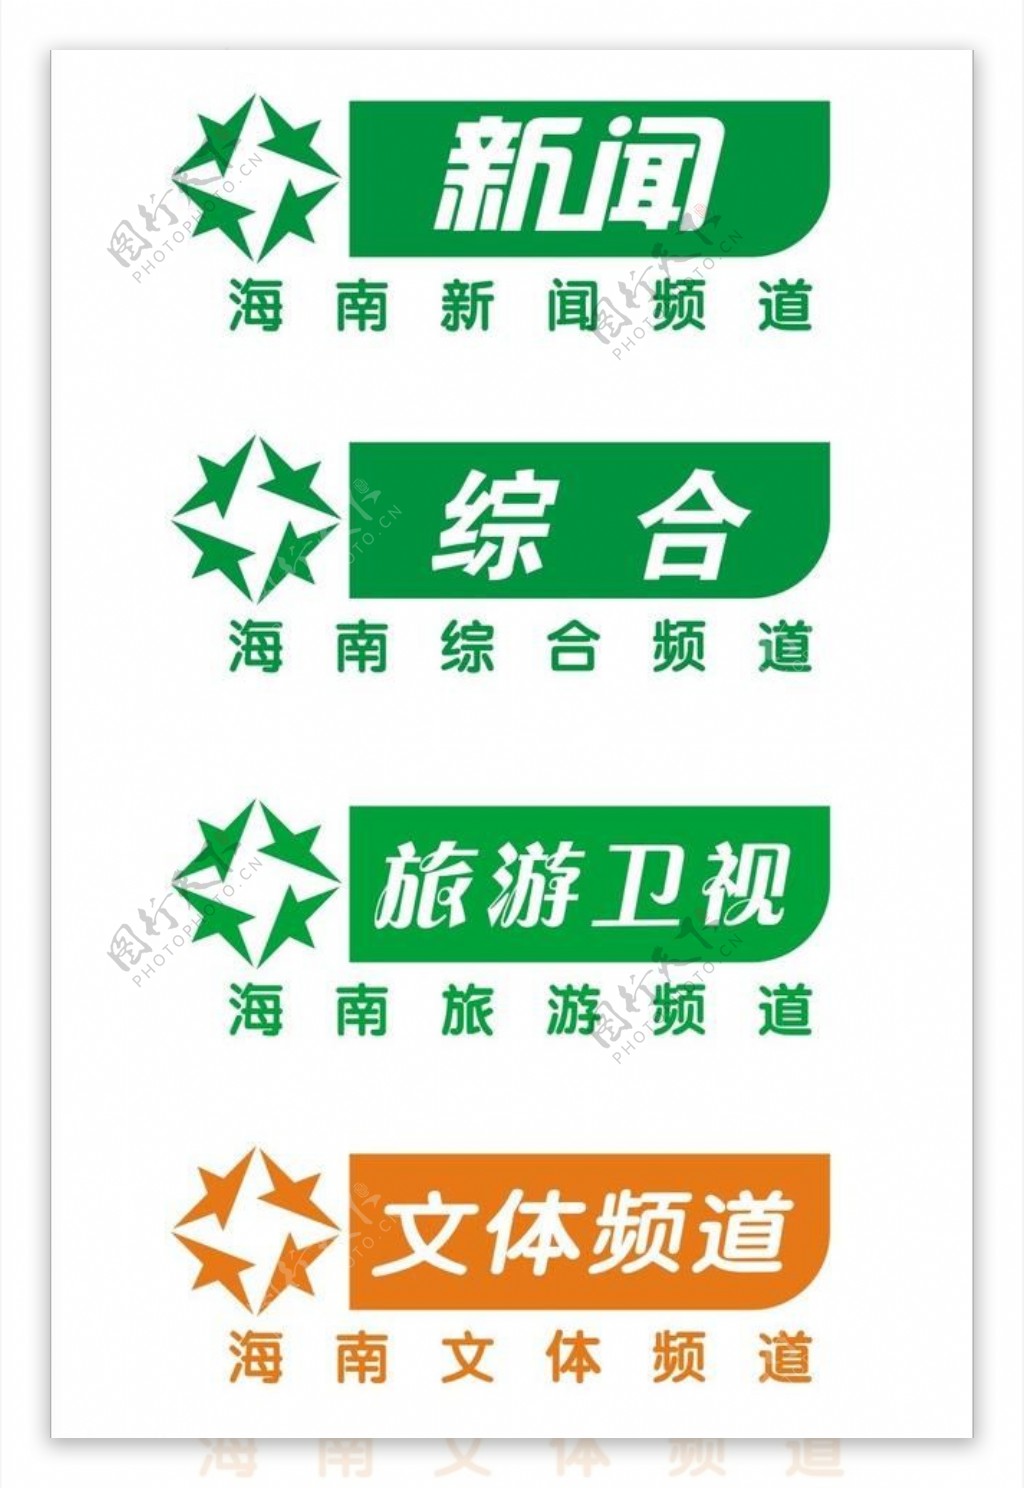 海南电视台logo图片